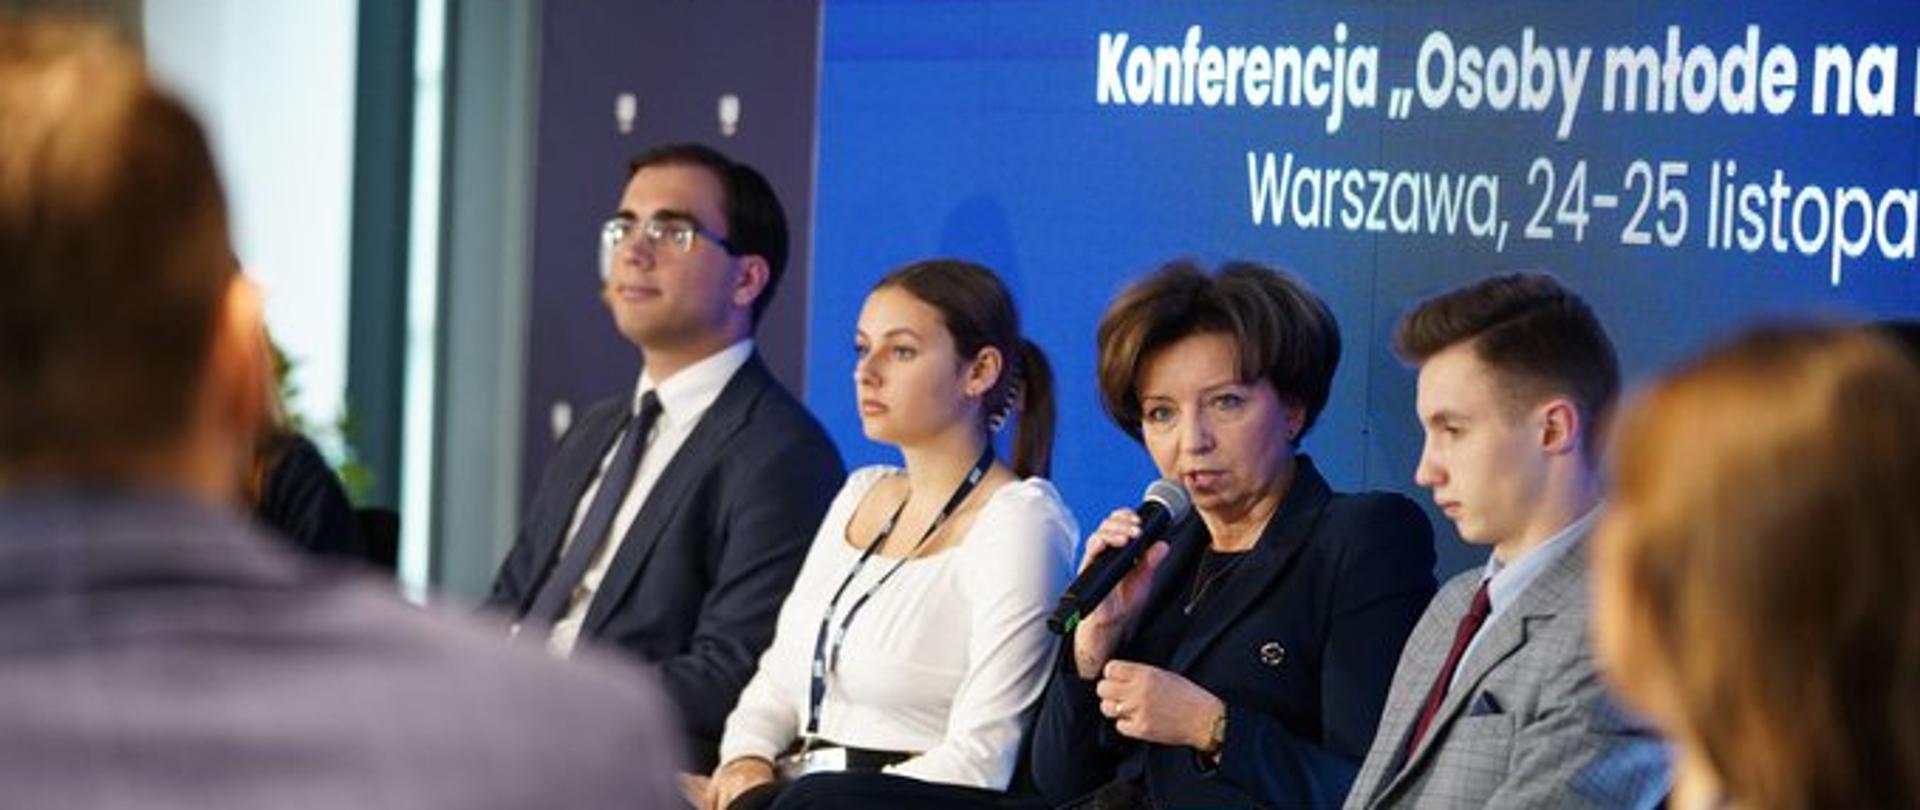 Konferencja „Osoby młode na rynku pracy”